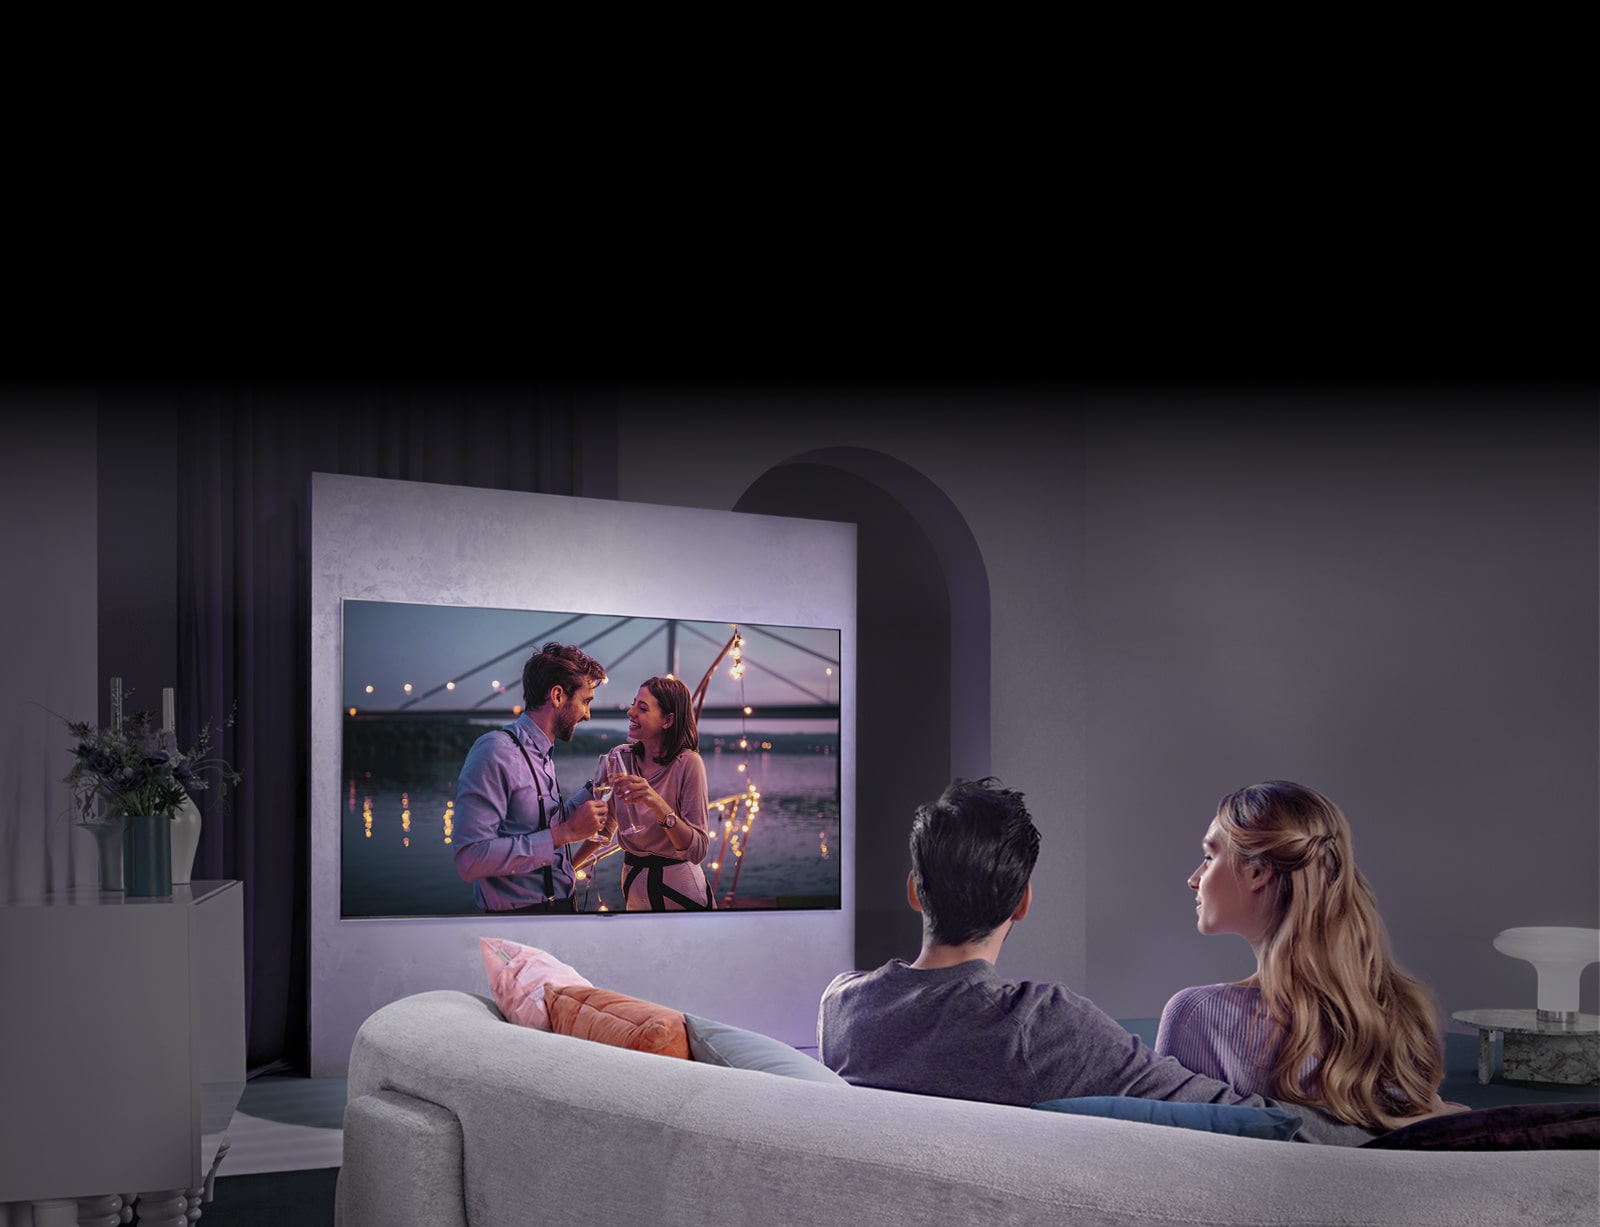 Una persona sentada en un sofá está disfrutando de una película en un gran televisor colgado en la pared.